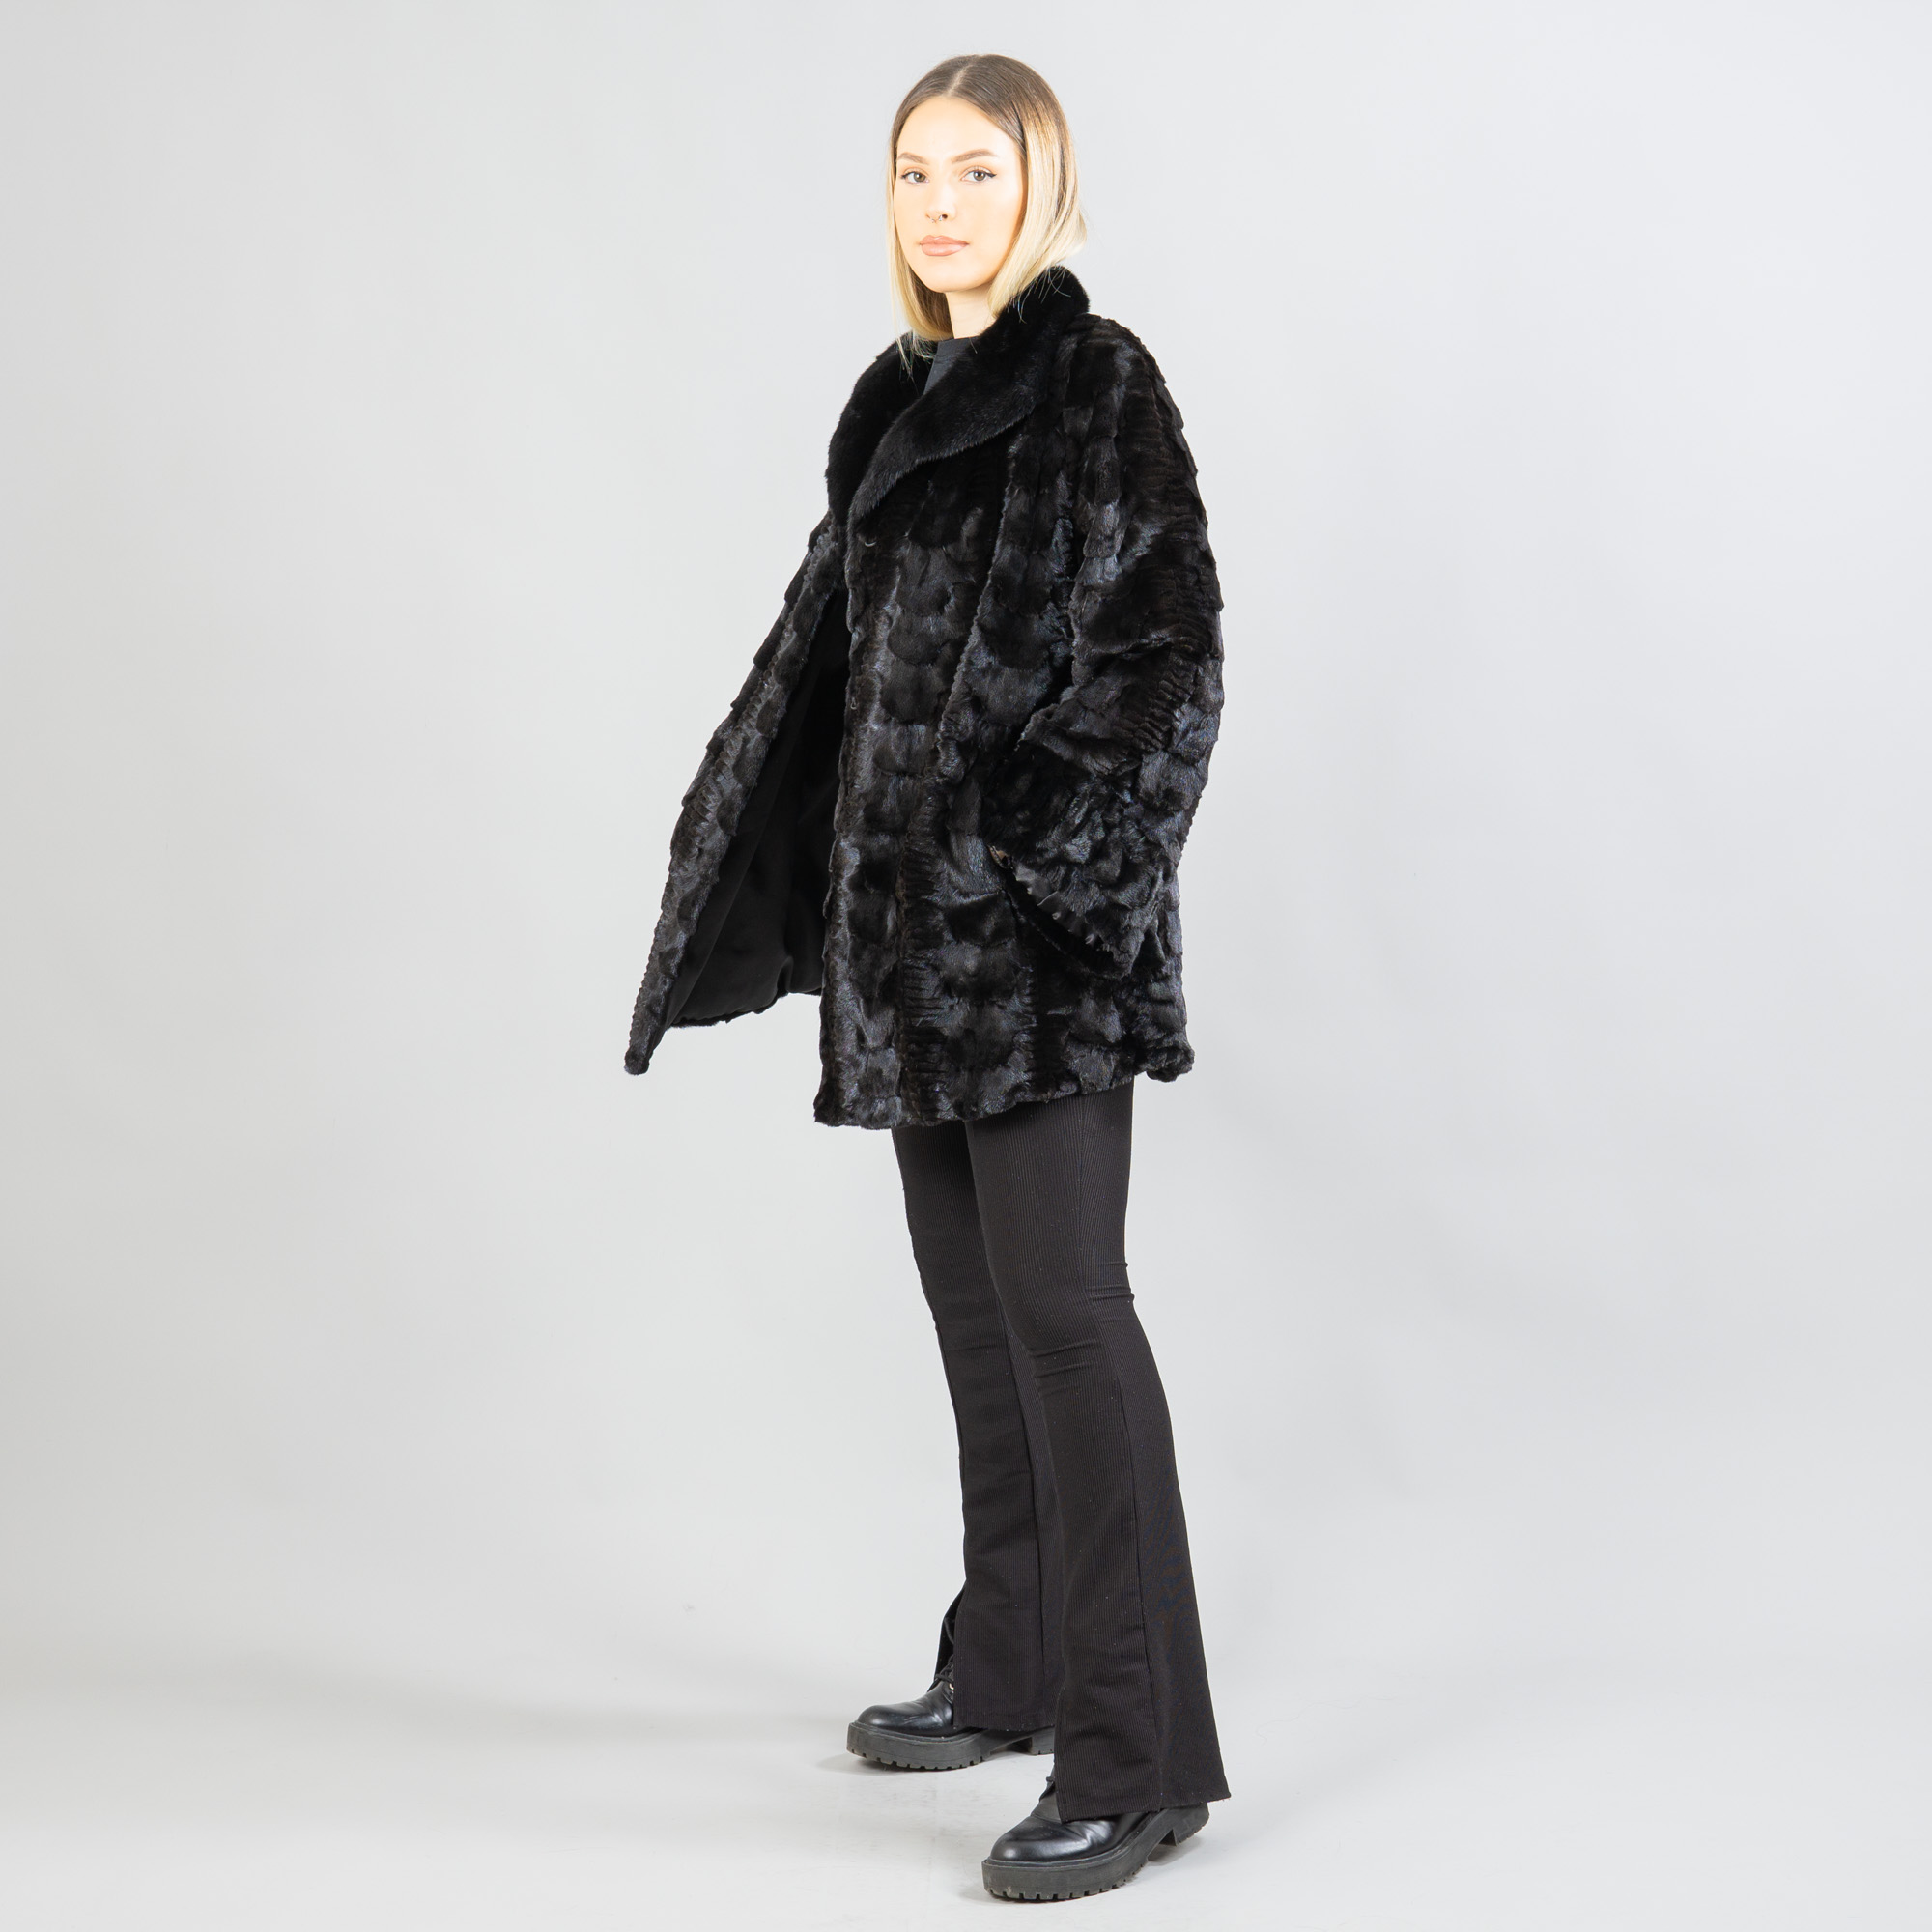 Black mink fur jacket